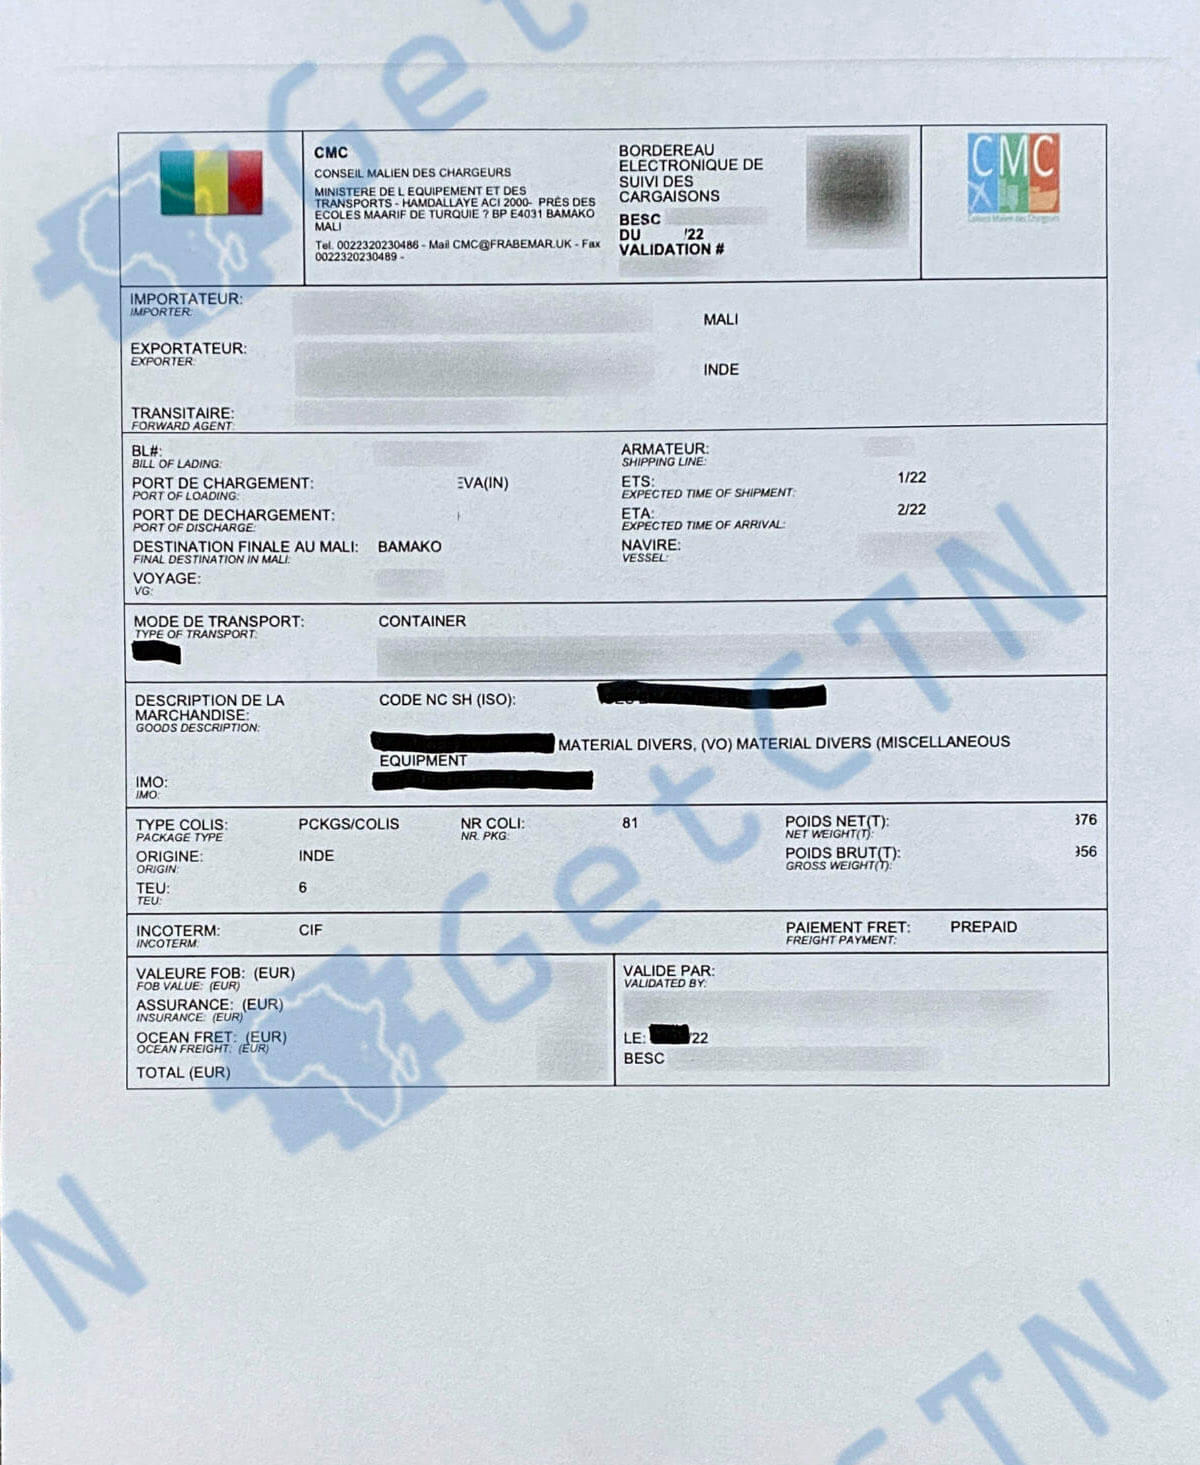 A Sample Mali BSC Certificate